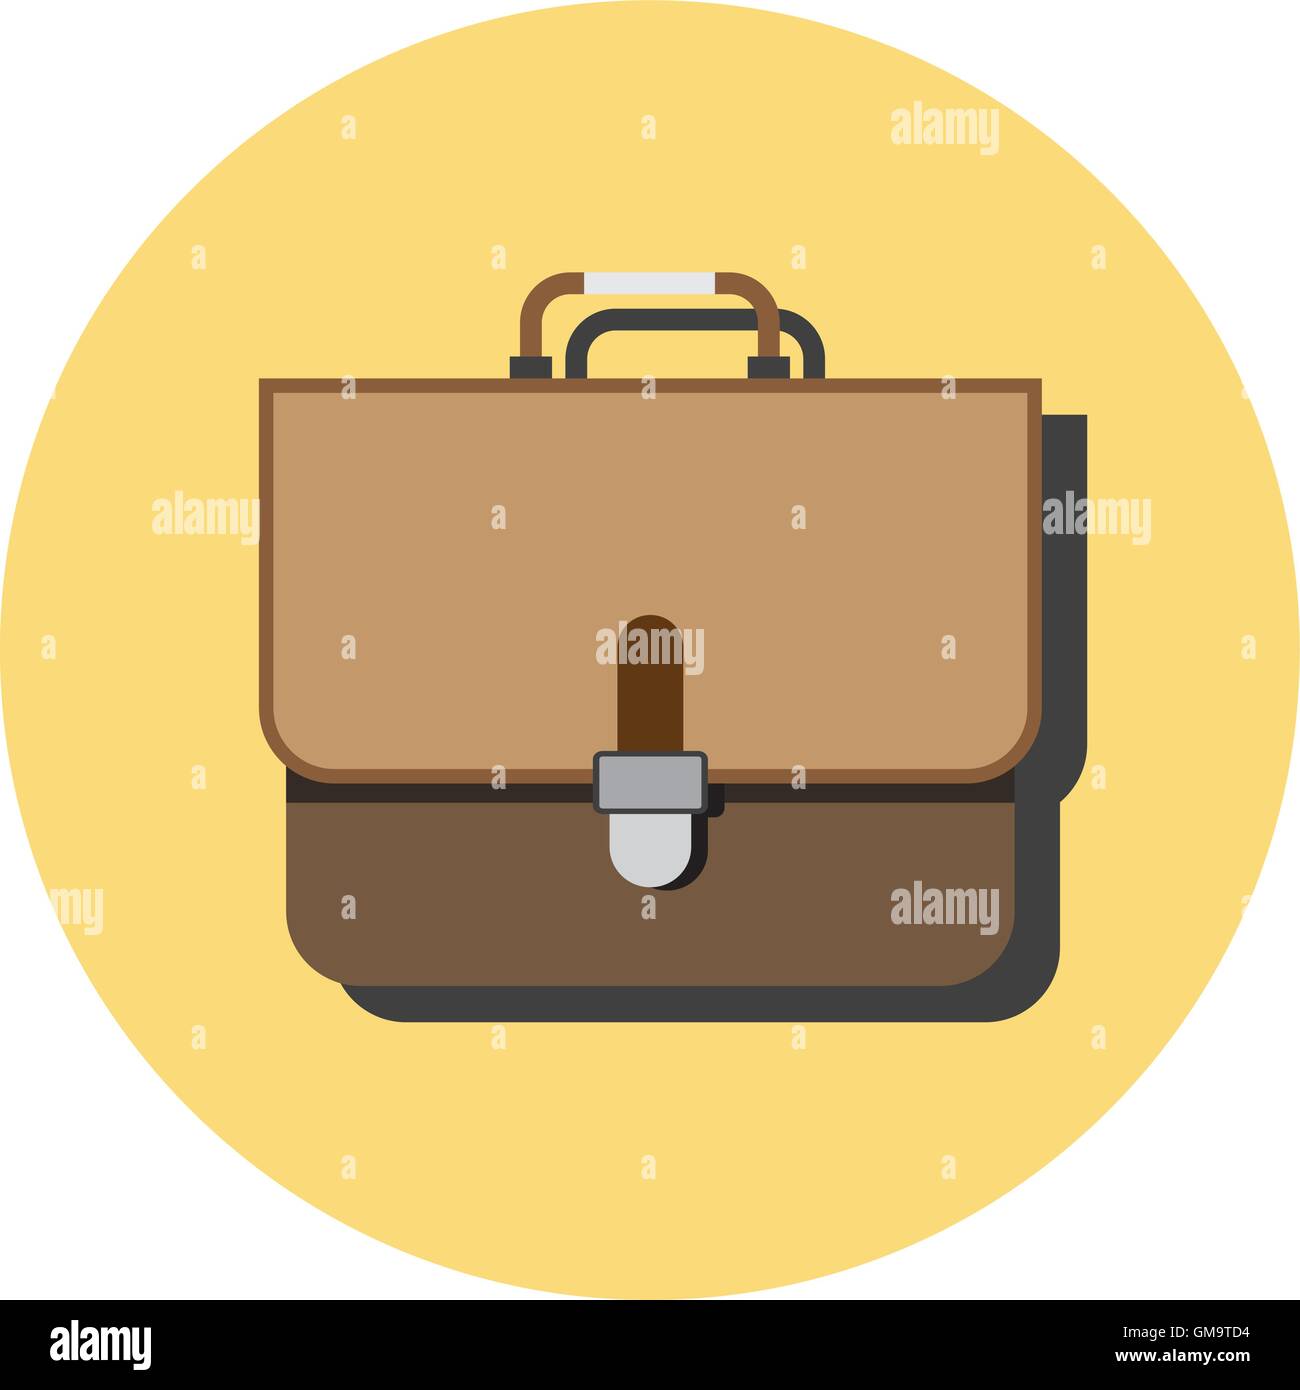 Gezeichnete Koffer auf weiß Stock-Vektorgrafik - Alamy